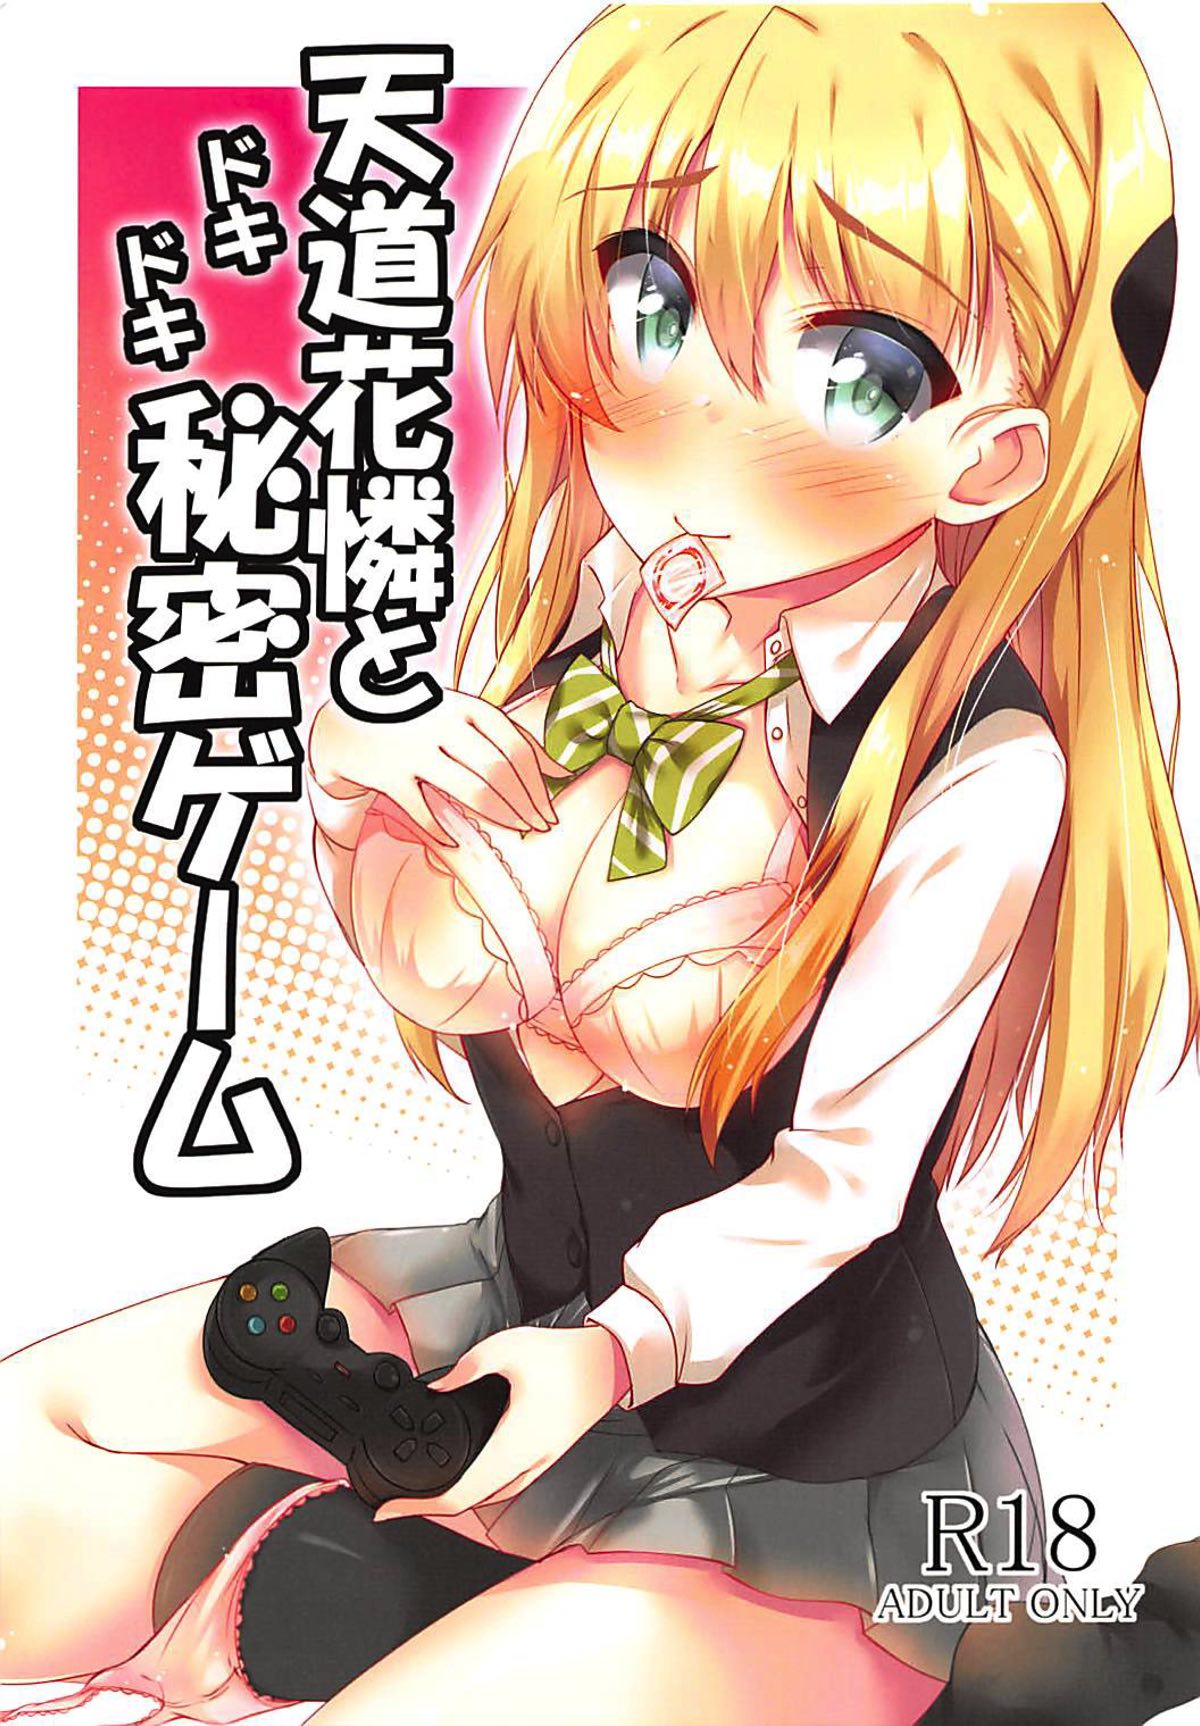 Read âŒgamers âŒ Porn comics Â» Hentai porns - Manga and porncomics xxx 1  hentai comics